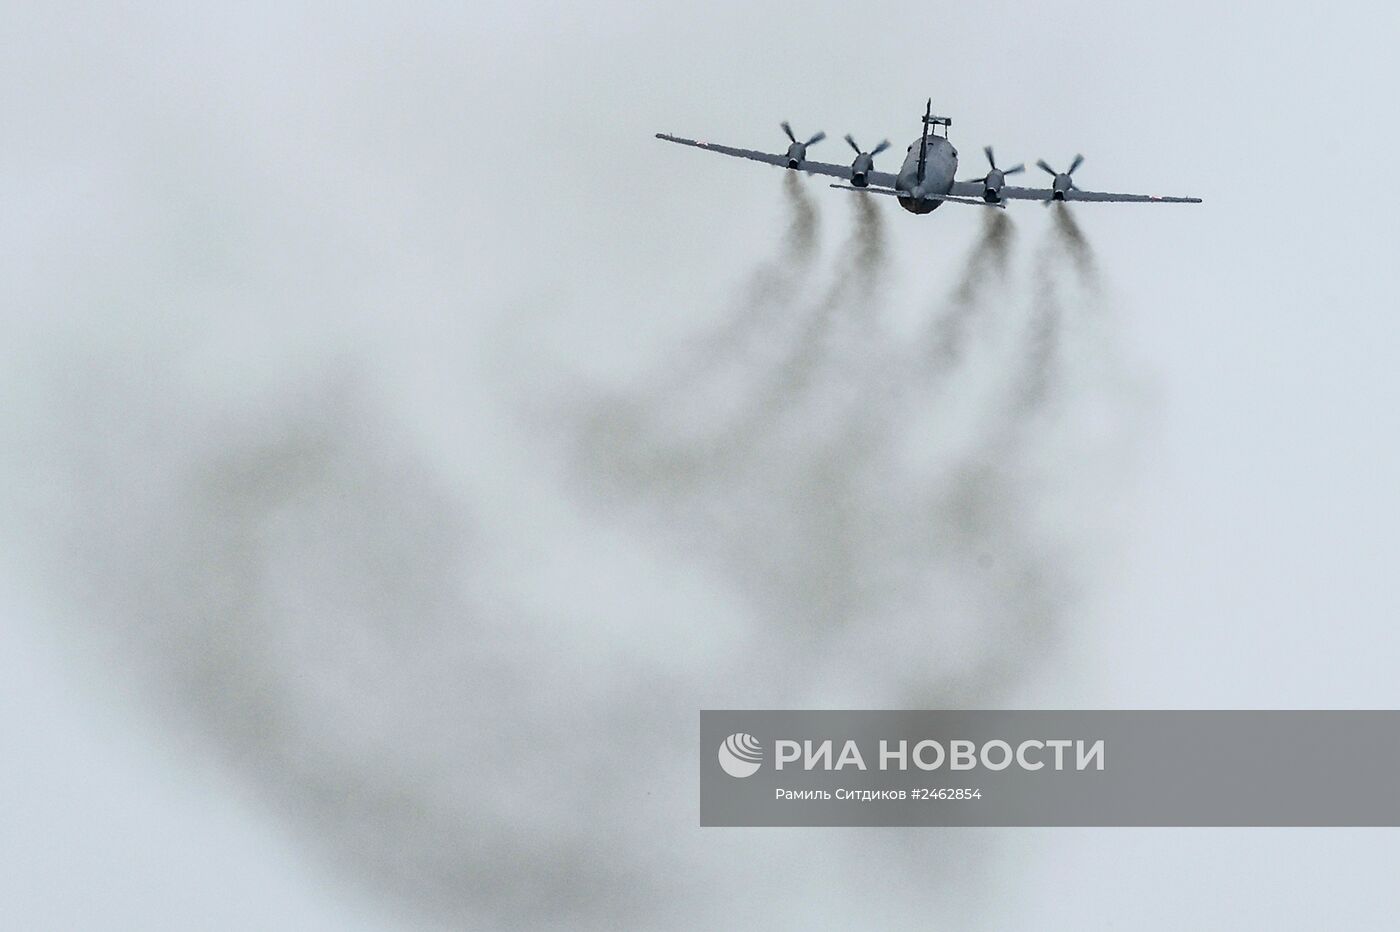 Передача противолодочного самолета Ил-38Н ВМФ России